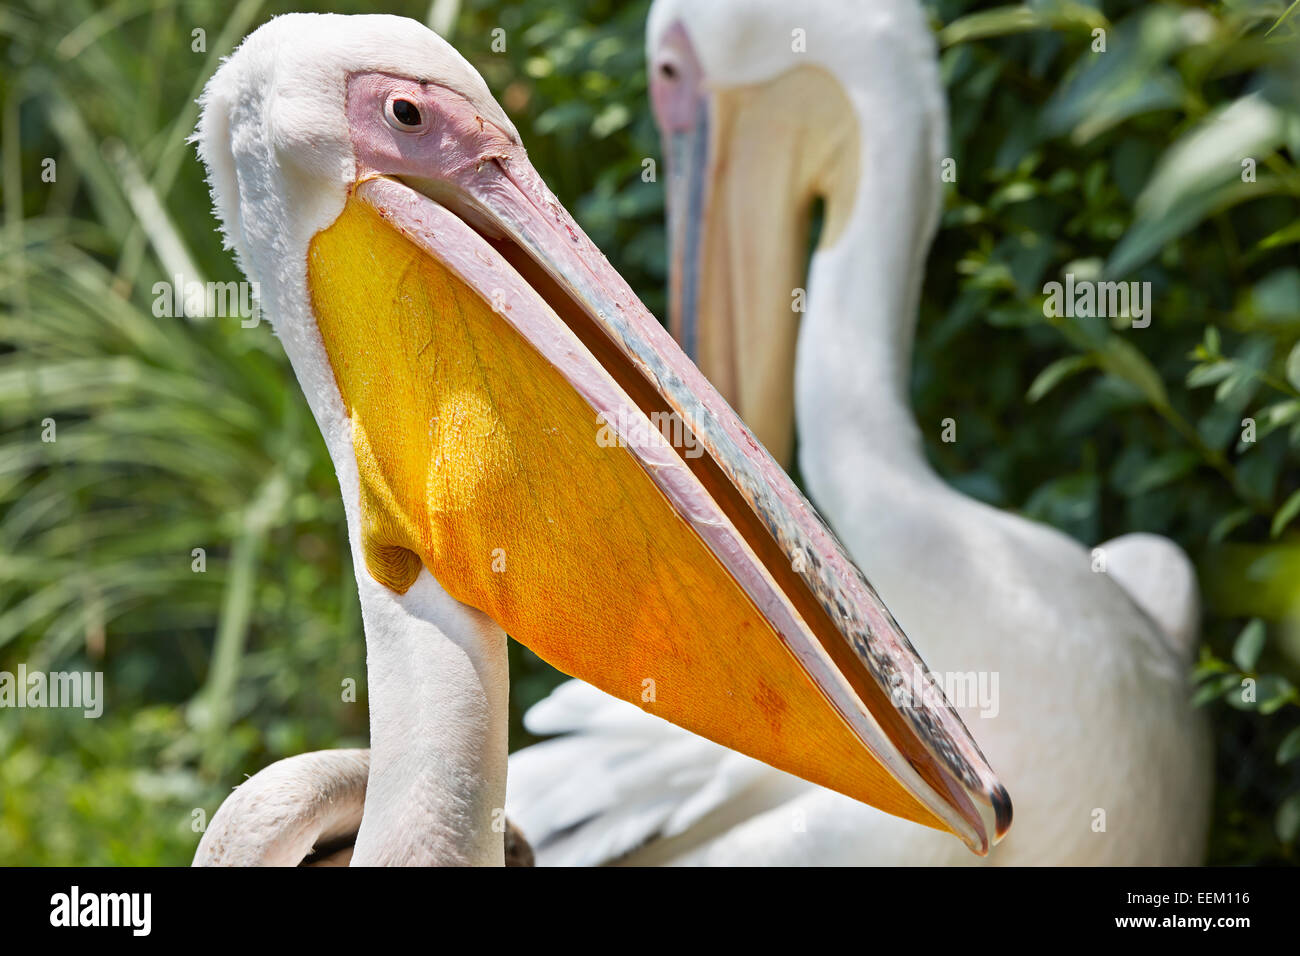 Great white pelican. Scientific name: Pelecanus onocrotalus. Stock Photo